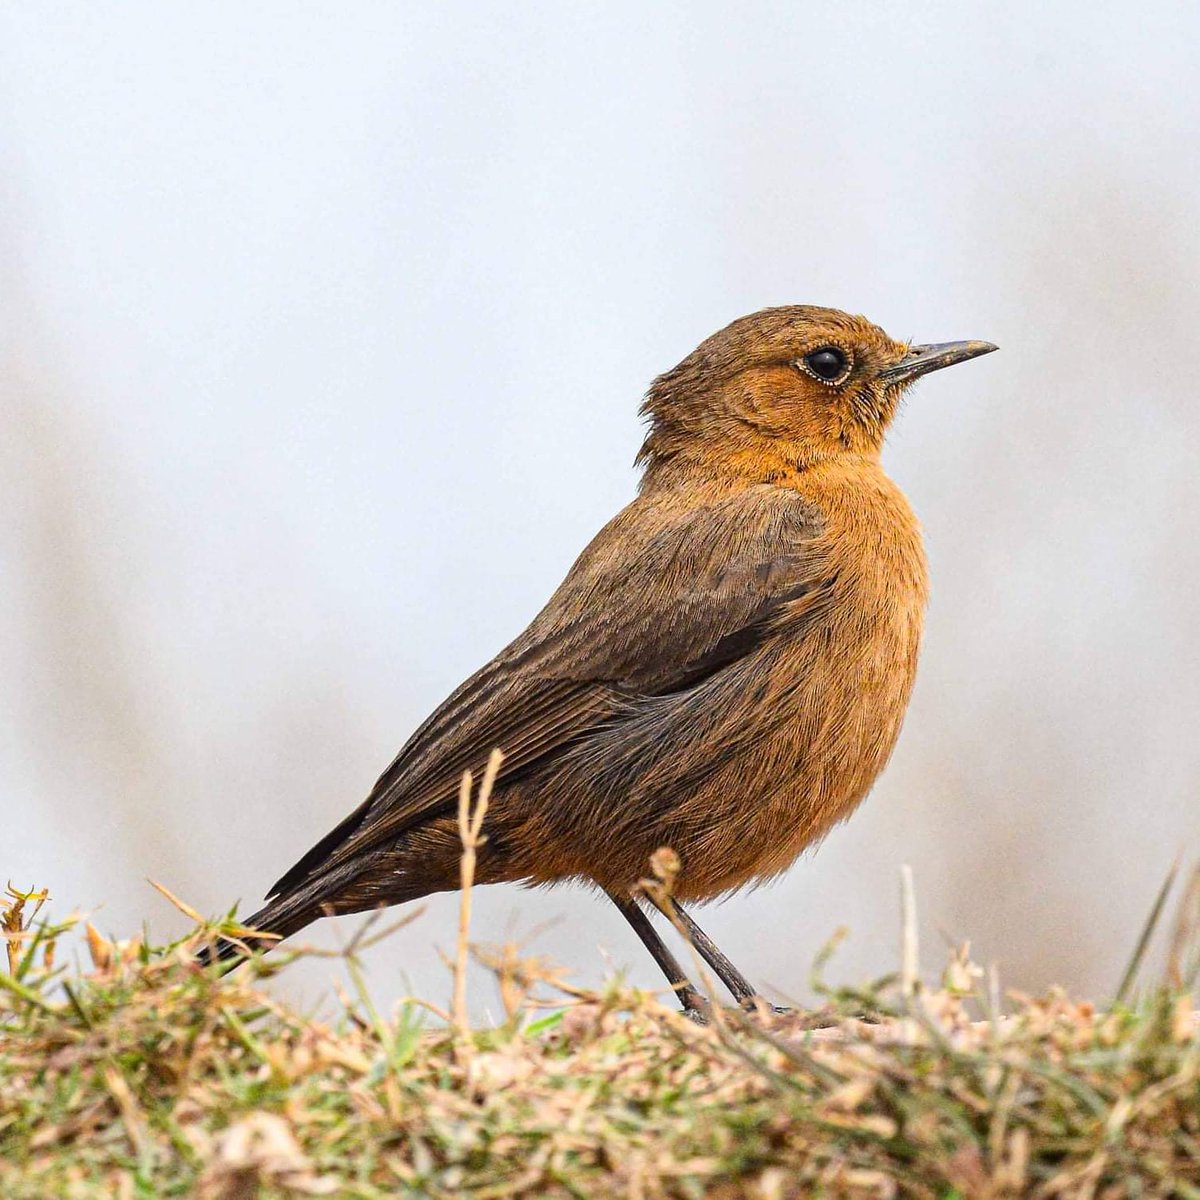 Brown rock chat #birdsphotography #birds #netgeowild #bird #bpswalia #indiapictures #birdsofindia #brownrockchat #best_birds_photography #best_bird_of_world  #bbcearth @netgeo